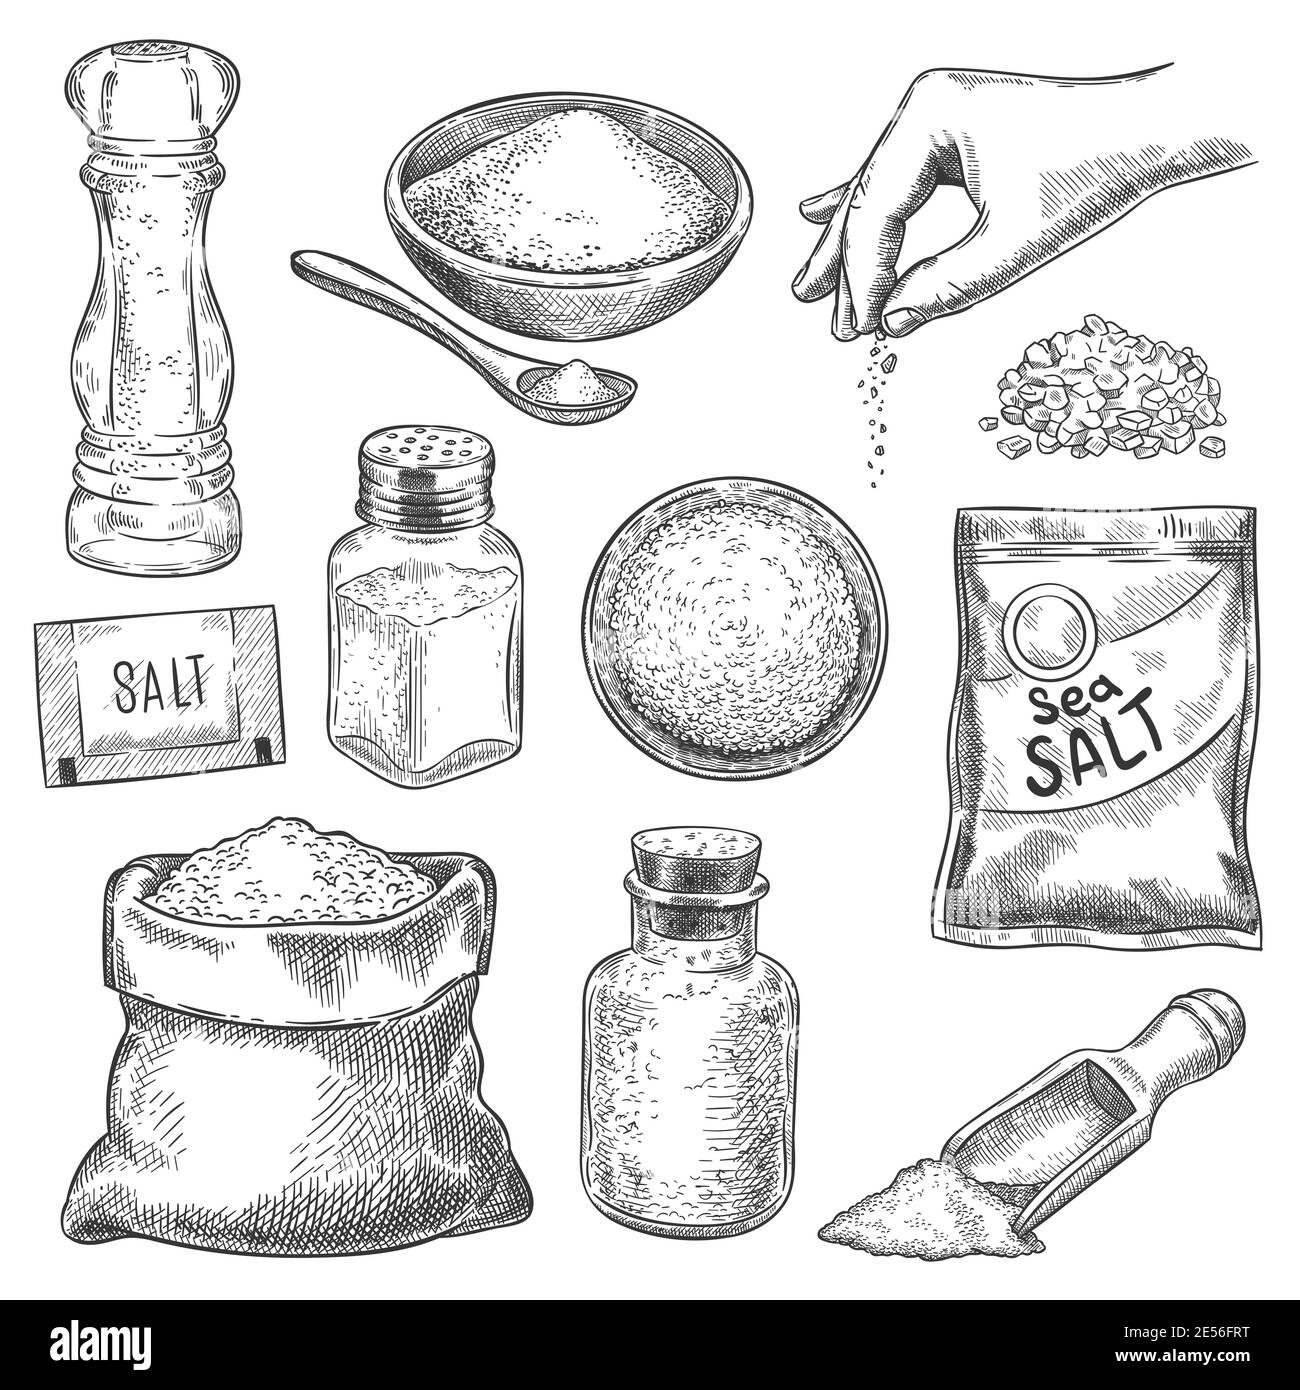 Salzskizze. Hand gezogener Löffel, Schüssel und Beutel mit Meersalzkristallen zum Baden oder Kochen. Salzstreuer und Arm mit Gewürz, Gravur Vektor-Set Stock Vektor